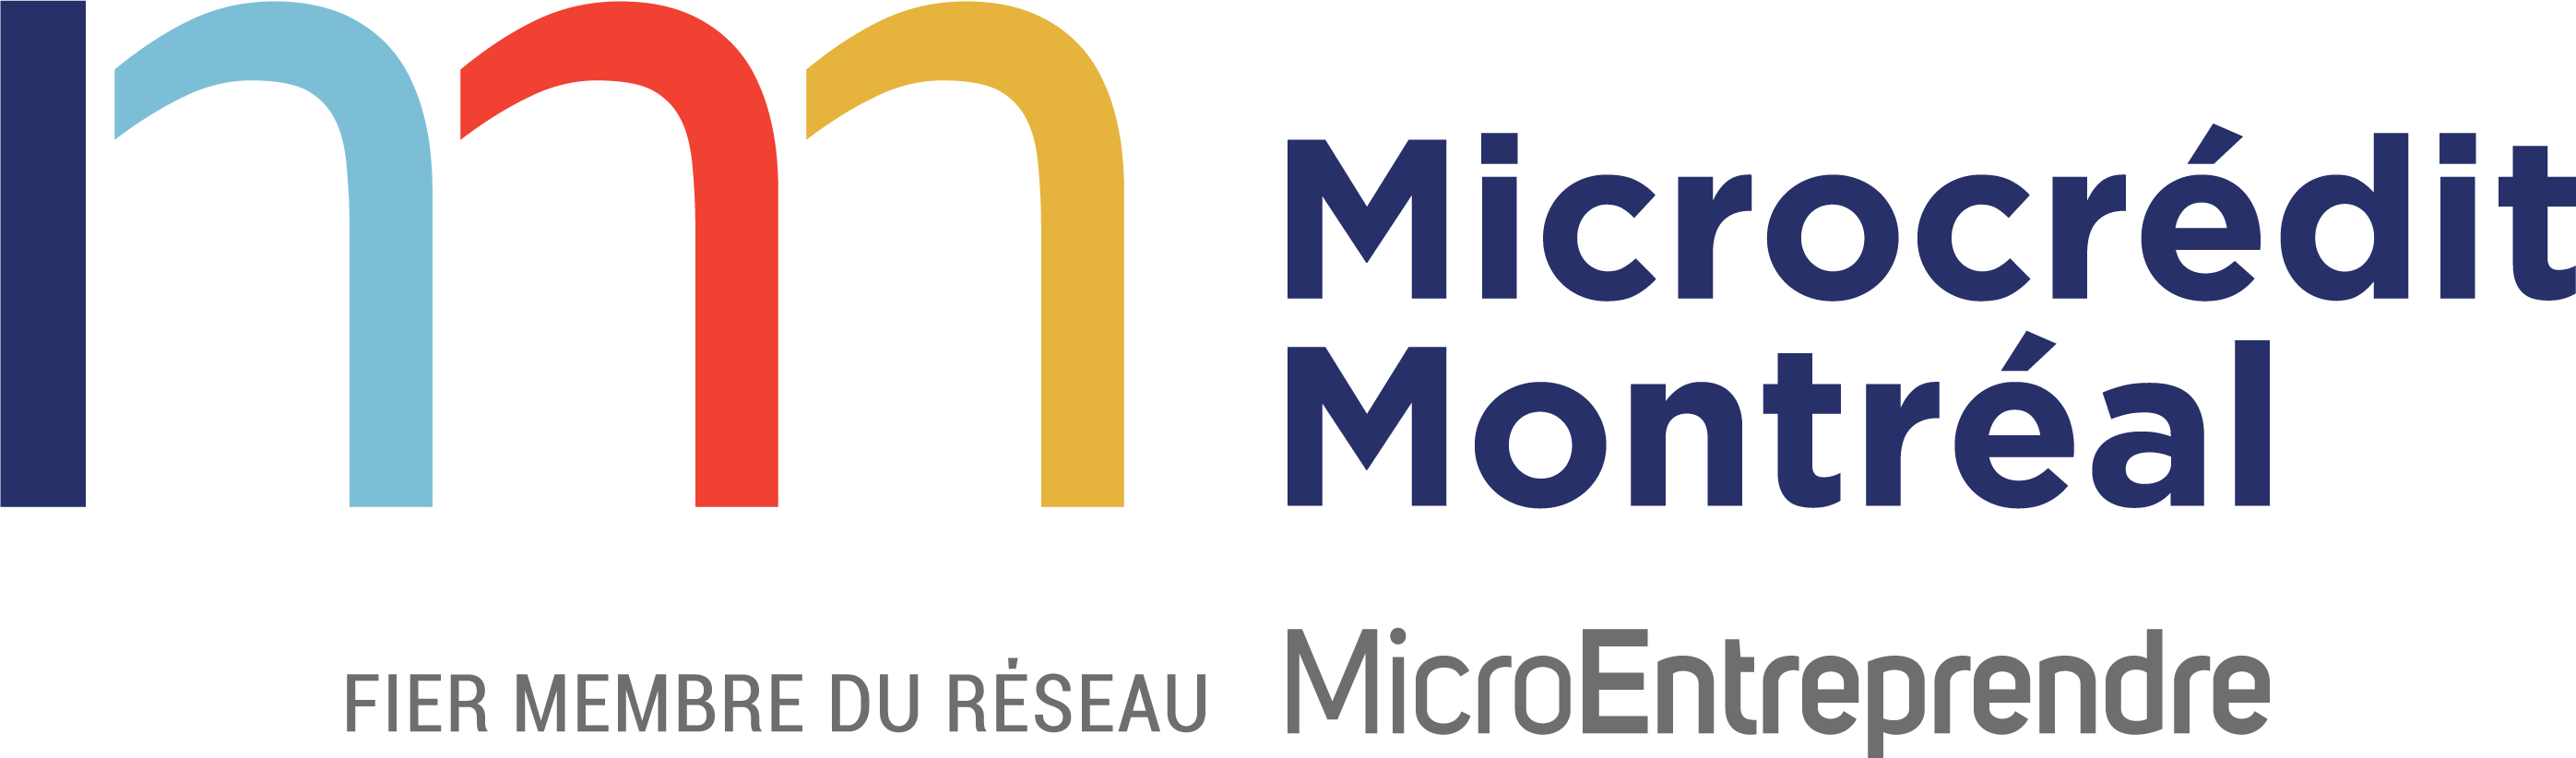 Microcrédit Montréal logo